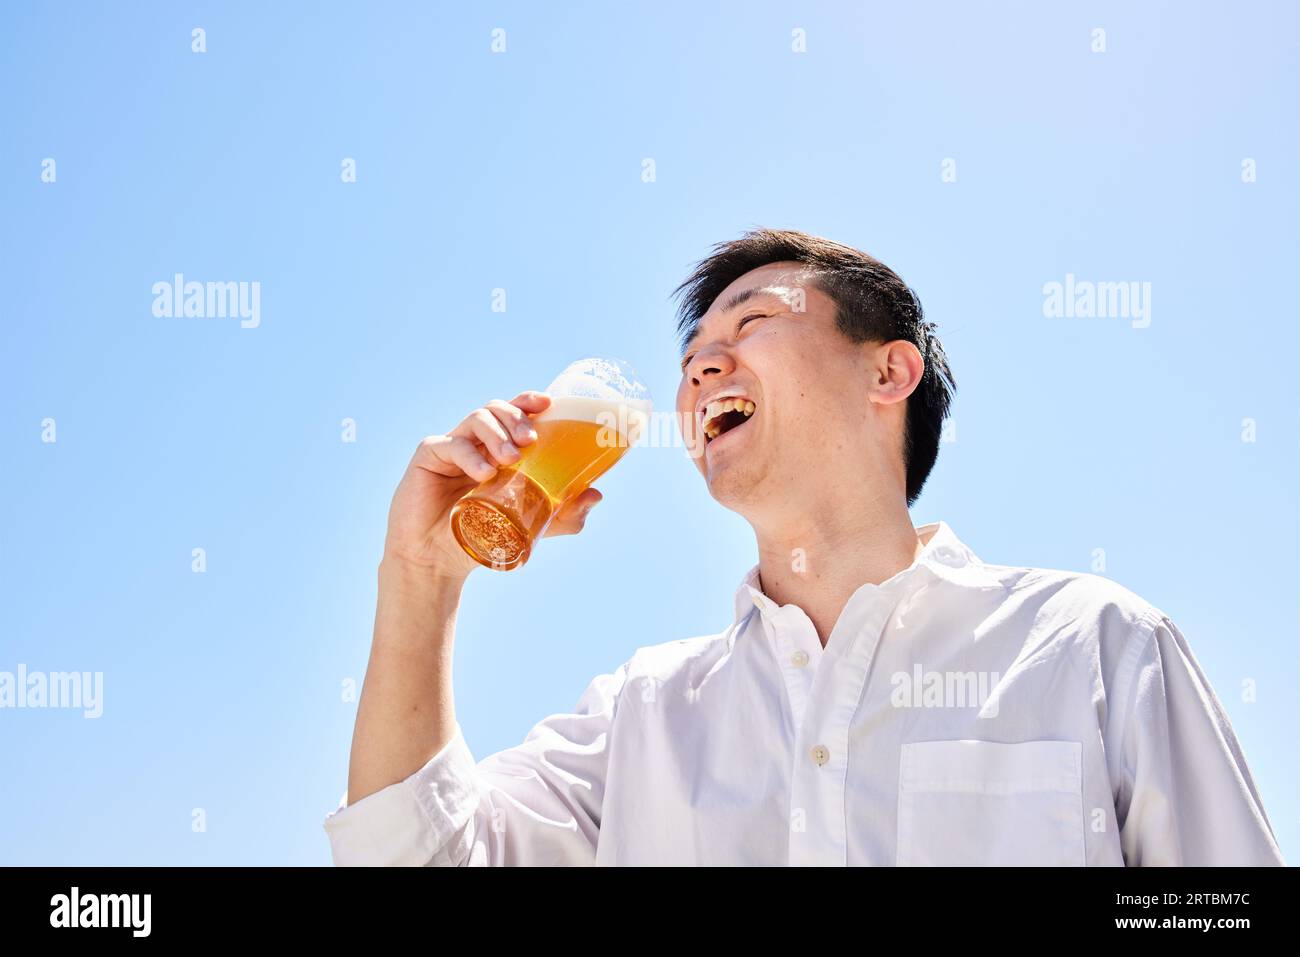 Homme japonais buvant de la bière Banque D'Images